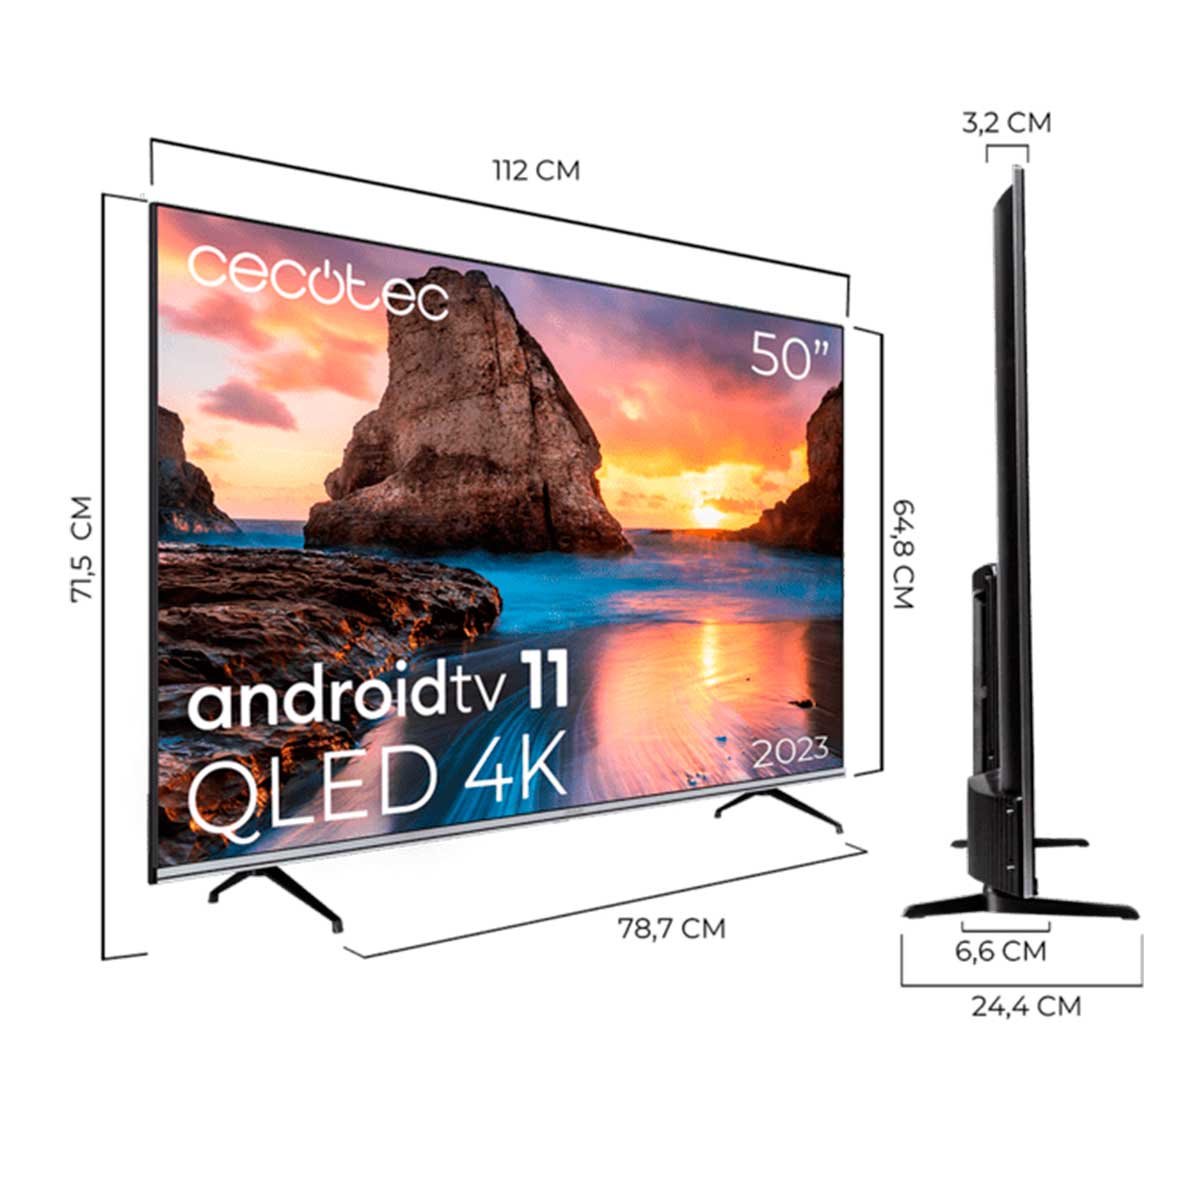 Televisión QLED TV Cecotec V1+ series con resolución 4K UHD y